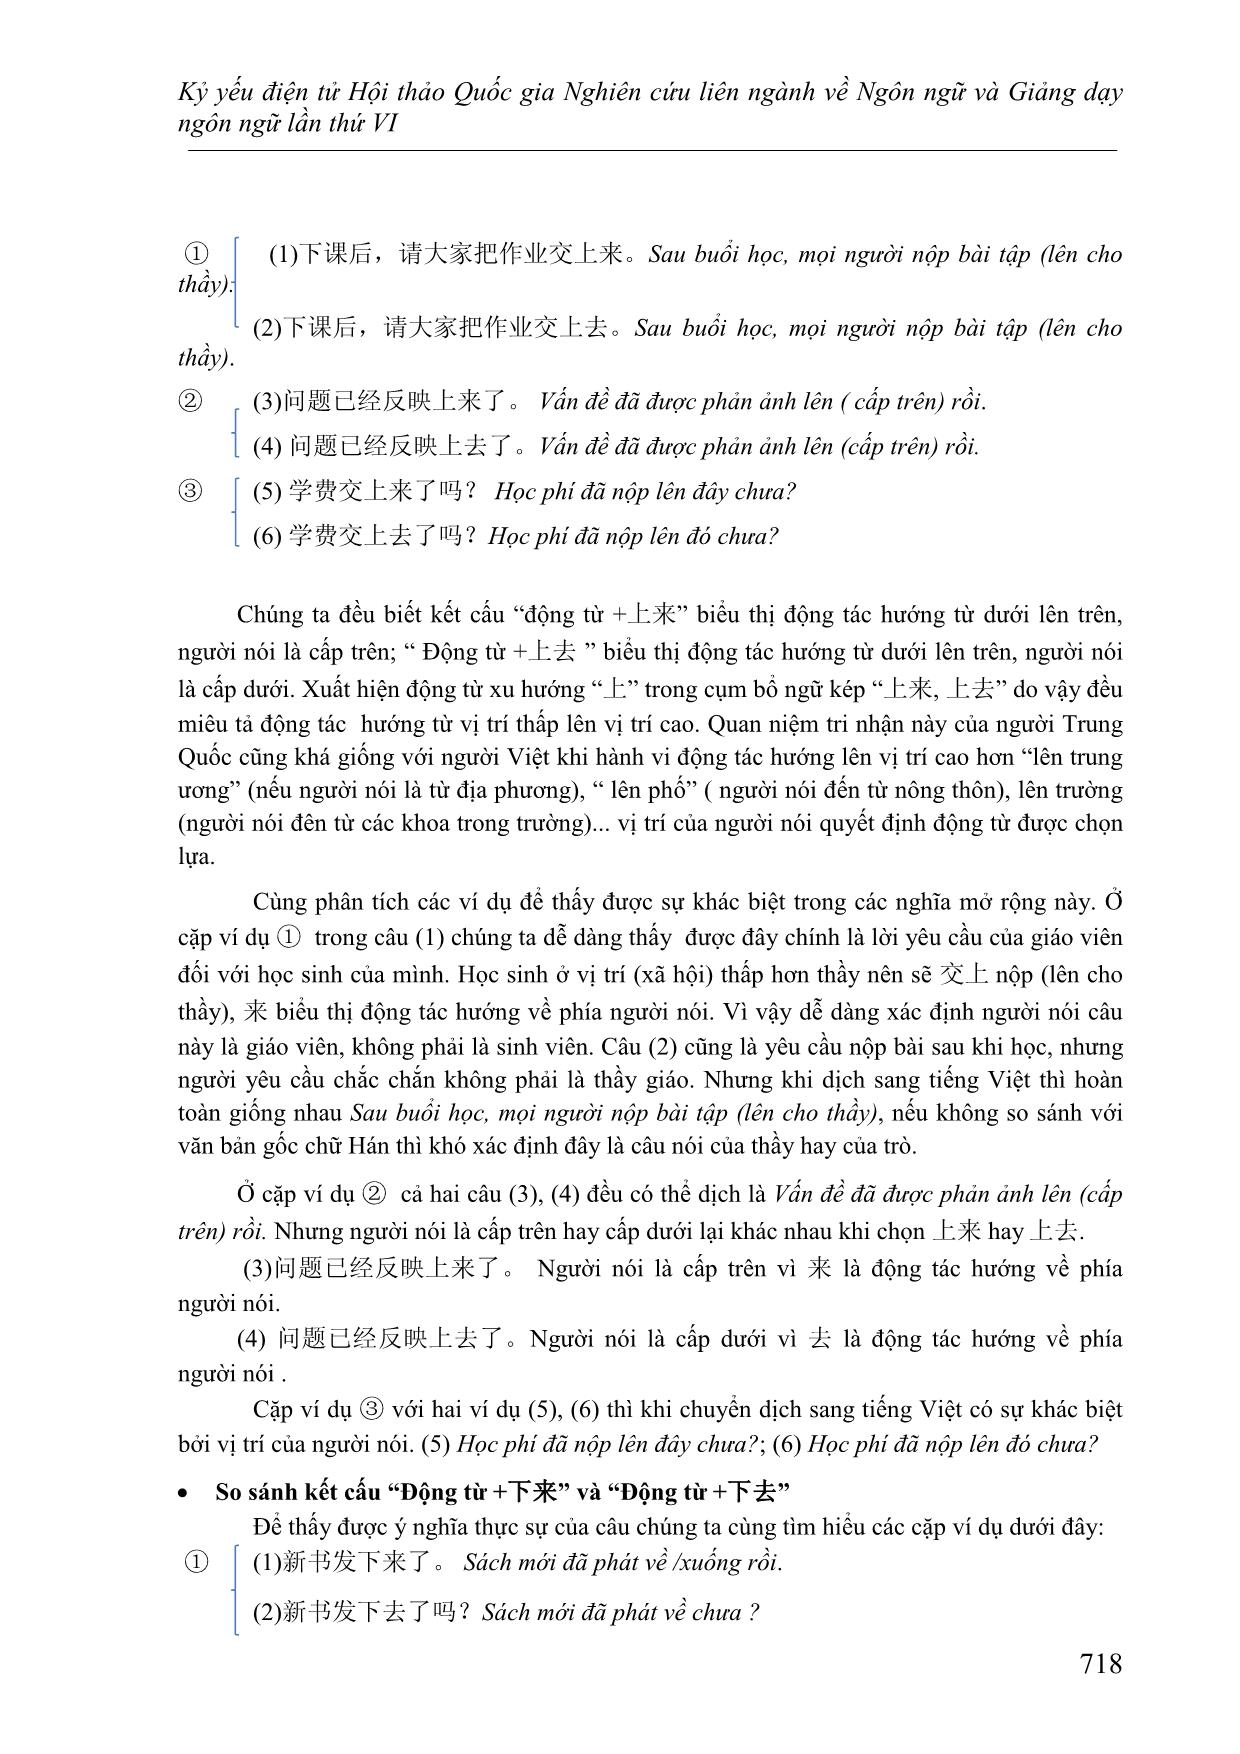 Cách dùng linh hoạt của bổ ngữ xu hướng và cách xác định ý nghĩa của câu khi sử dụng bổ ngữ xu hướng kép 上来, 上去, 下来,下 trang 8